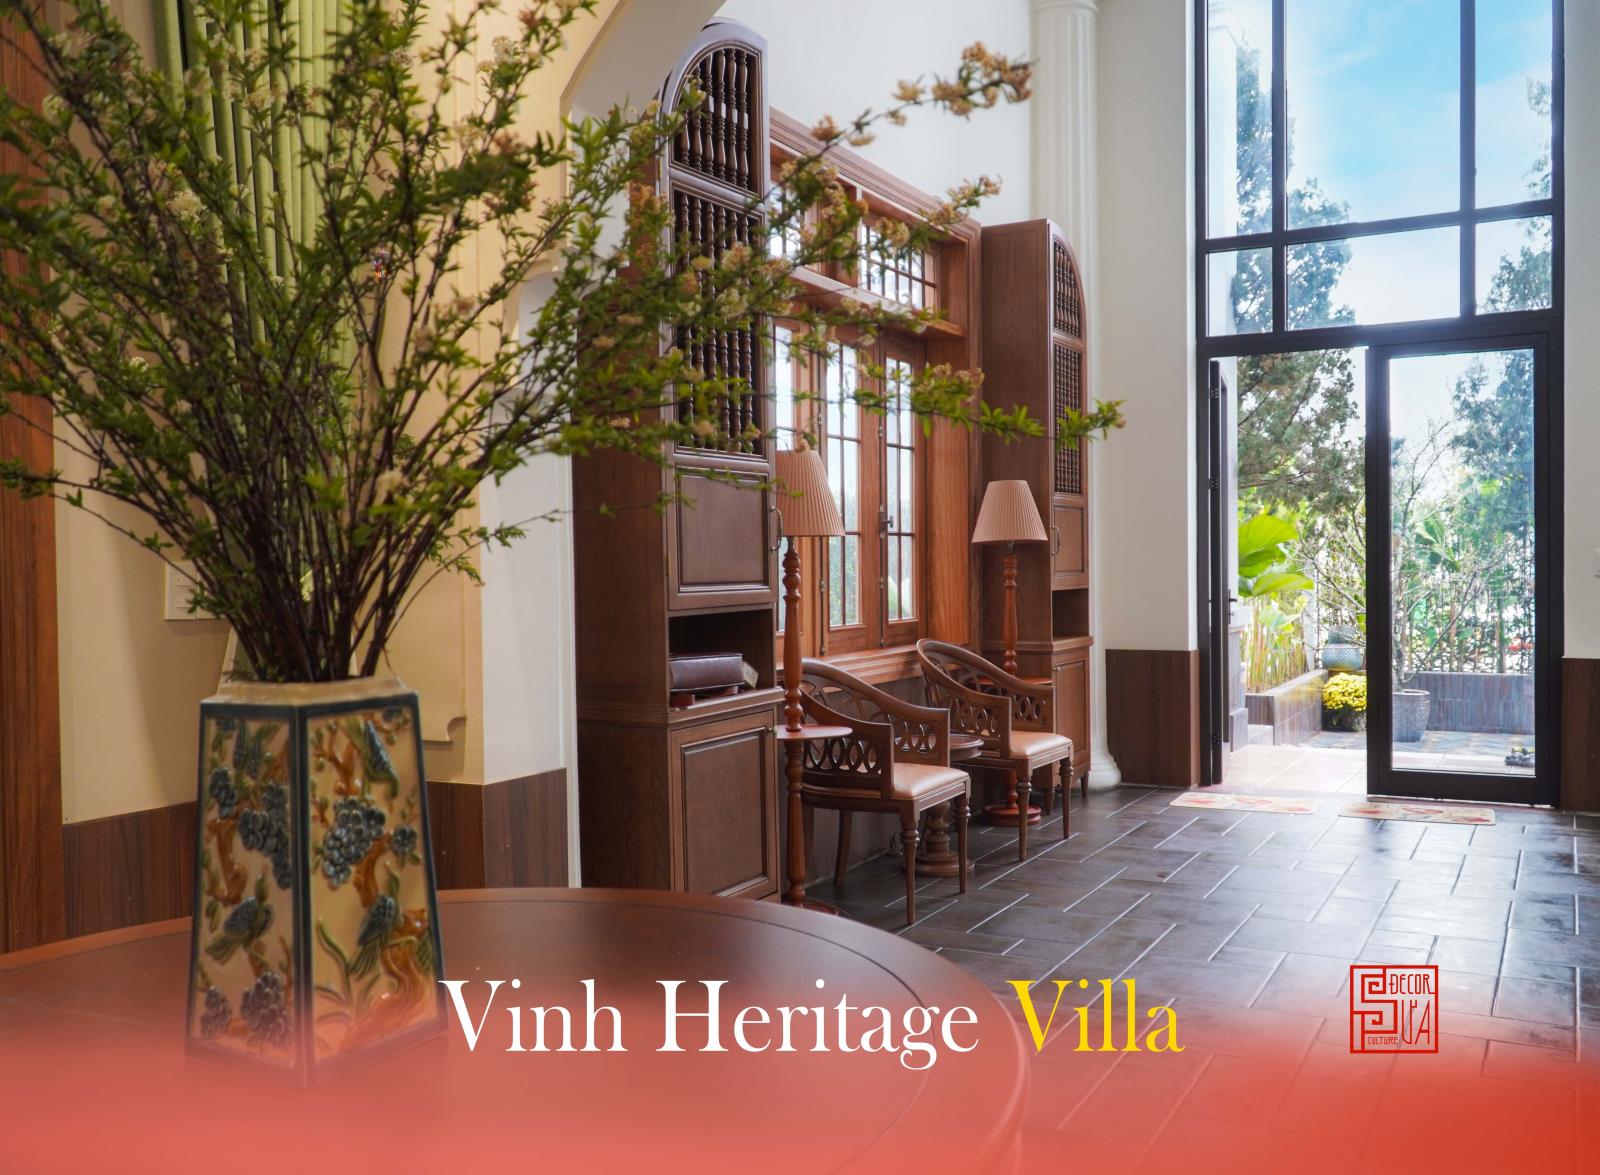 Vinh Heritage Villa